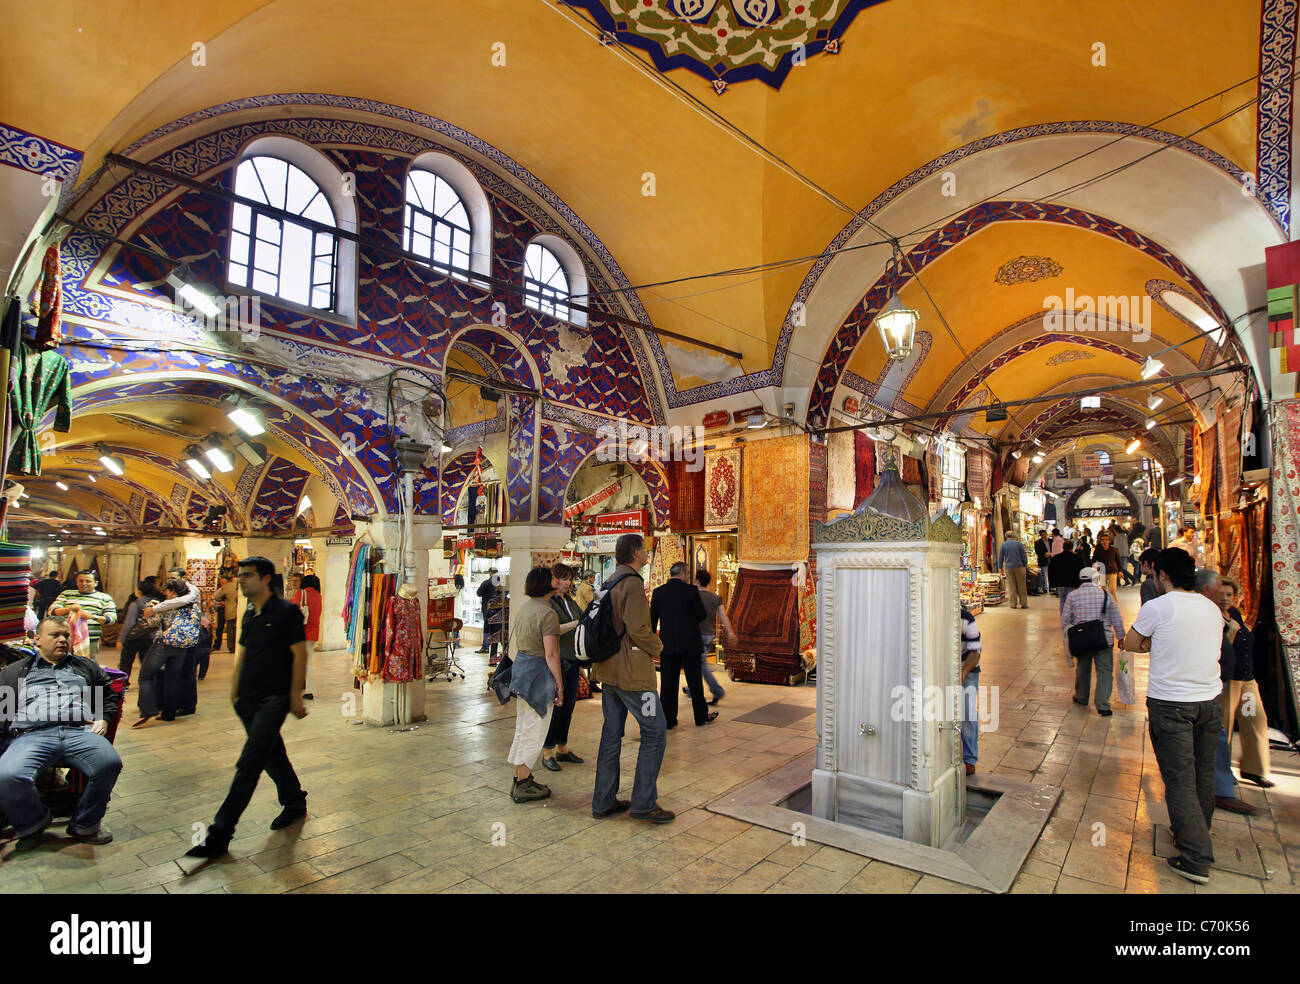 Kapali Carsi (signifie "Marché couvert"), le Grand Bazar d'Istanbul, l'un des principaux sites touristiques de cette magnifique ville. La Turquie Banque D'Images